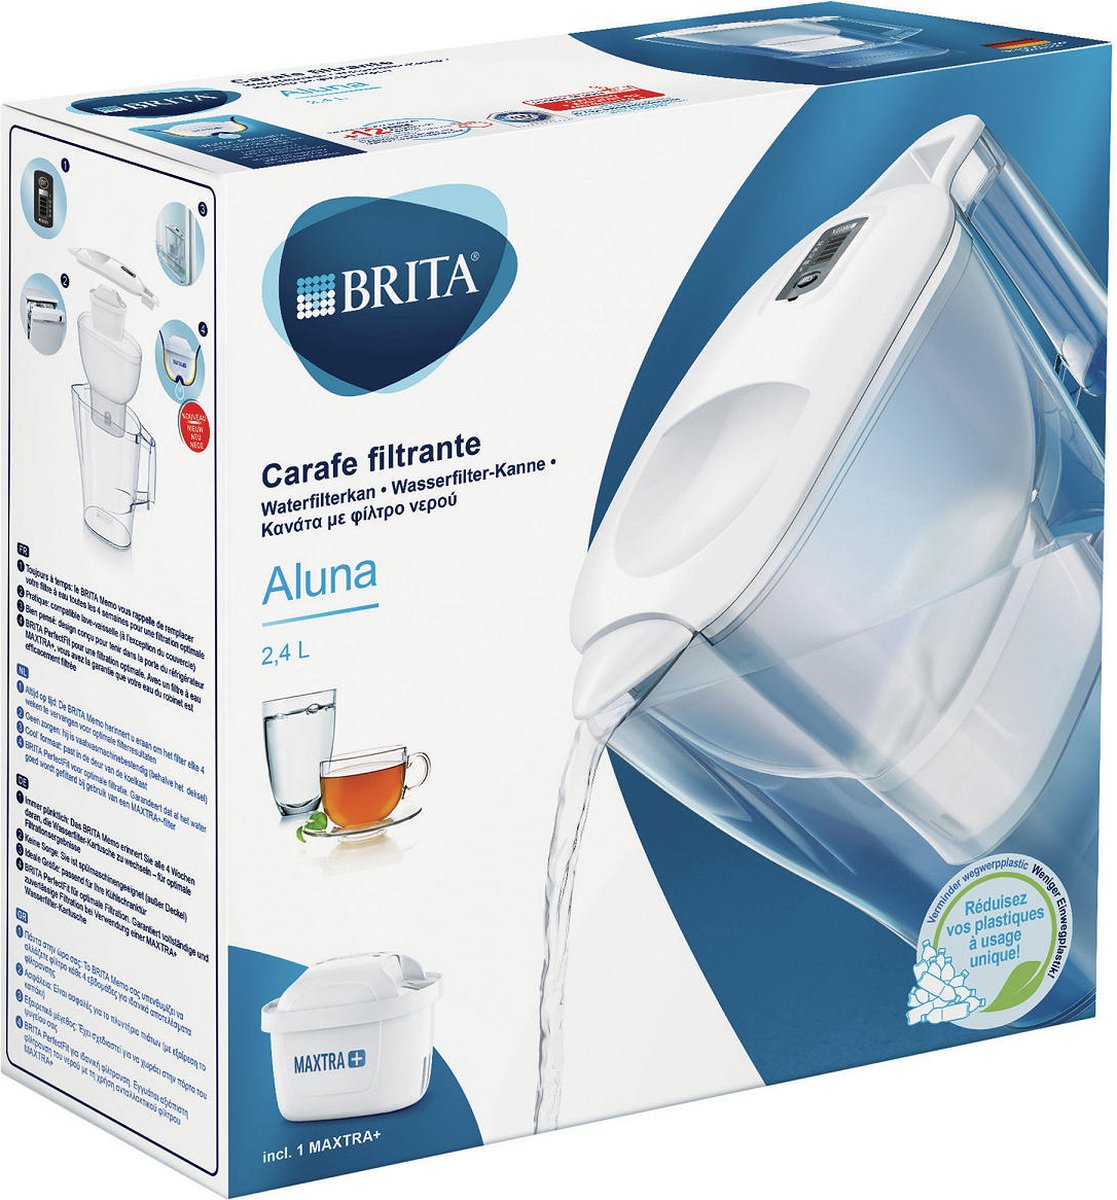 Carafe filtrante Brita Aluna Cool white - 2.4L | bol.com